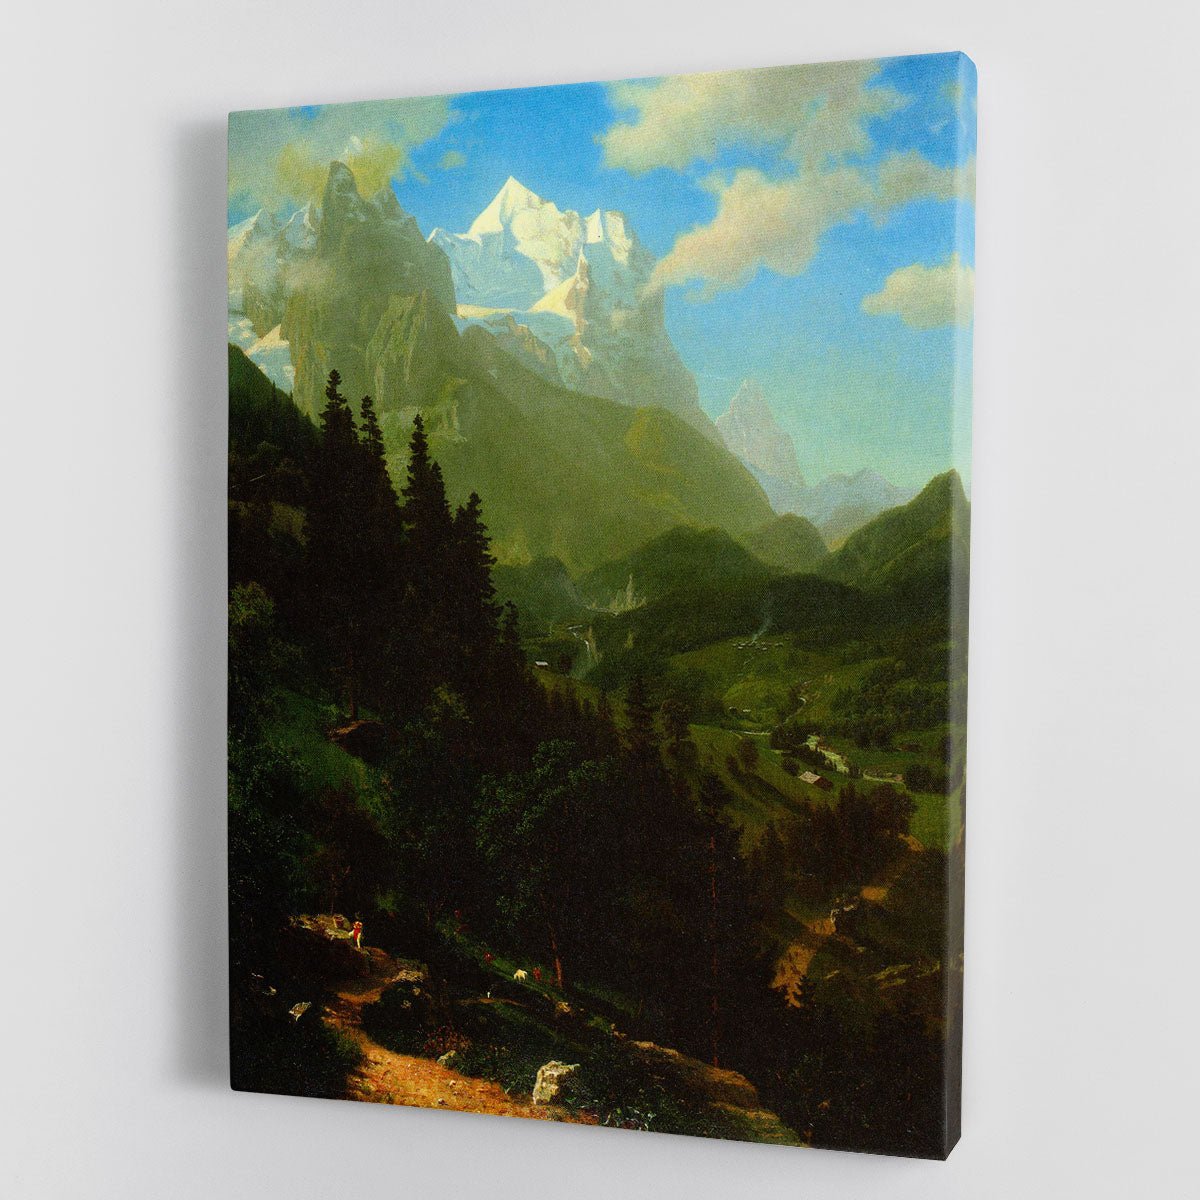 Matterhorn by Bierstadt Canvas Print or Poster - Canvas Art Rocks - 1